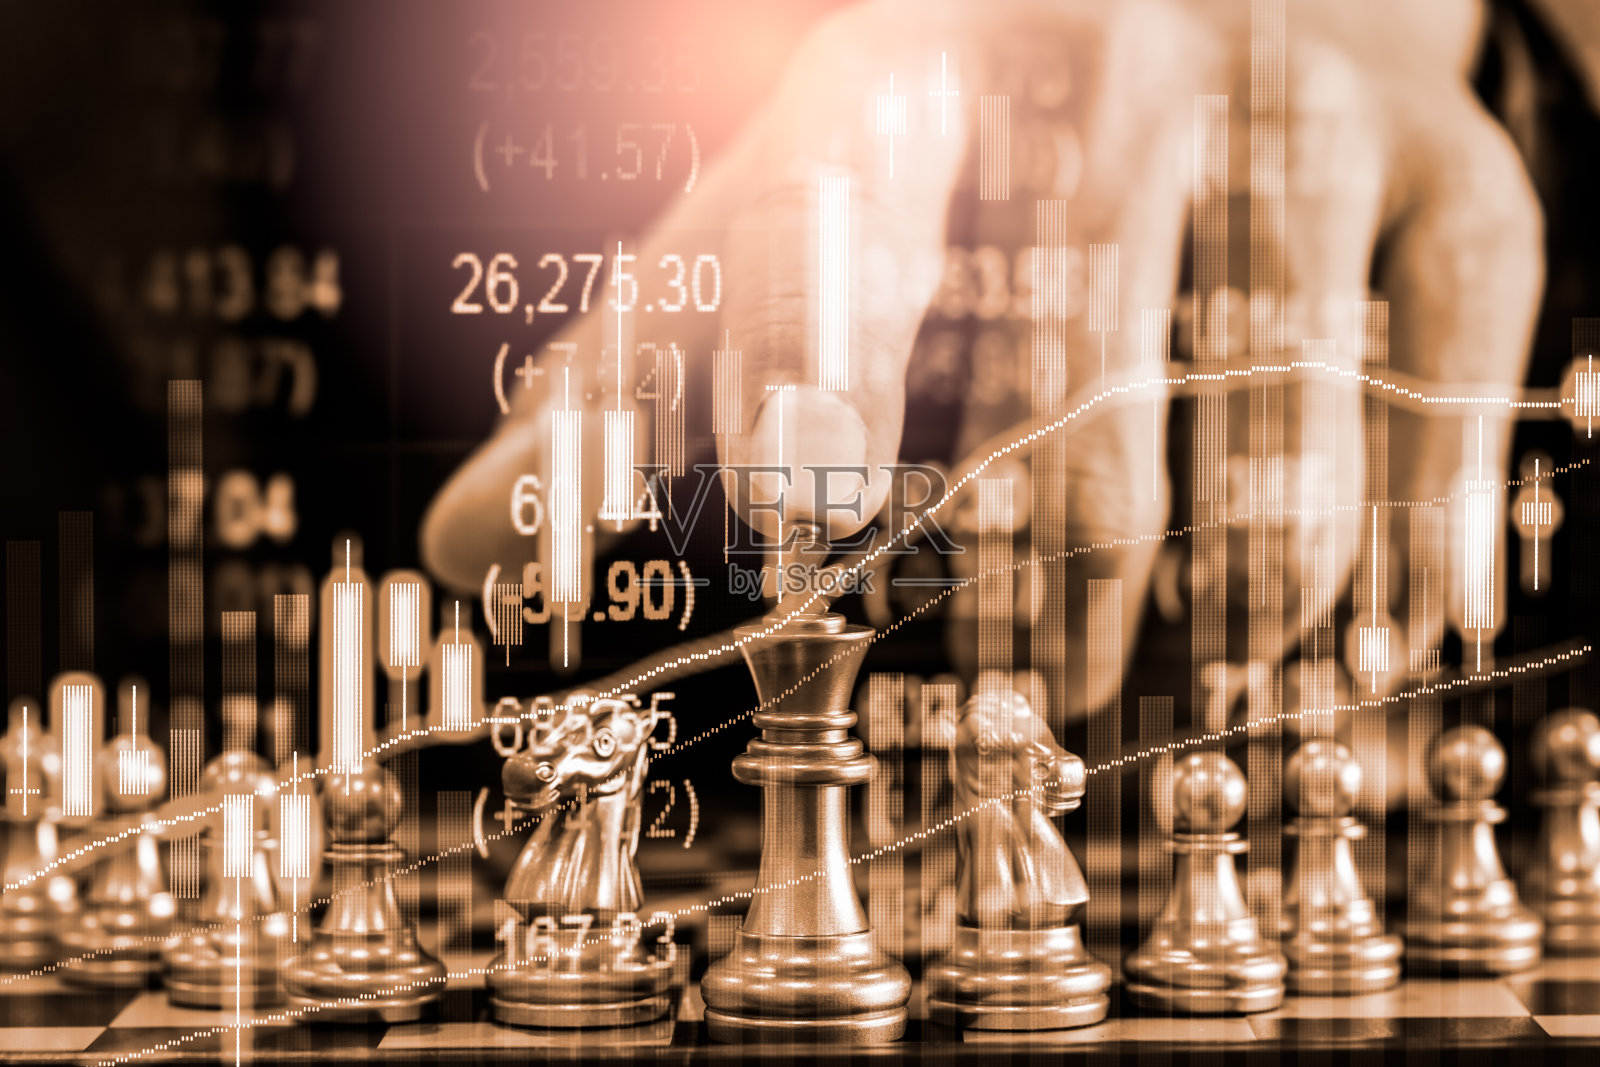 国际象棋游戏在国际象棋棋盘上的股票市场或外汇交易图表为金融投资概念。针对数字商务的经济趋势进行营销策略分析。抽象的金融背景。照片摄影图片